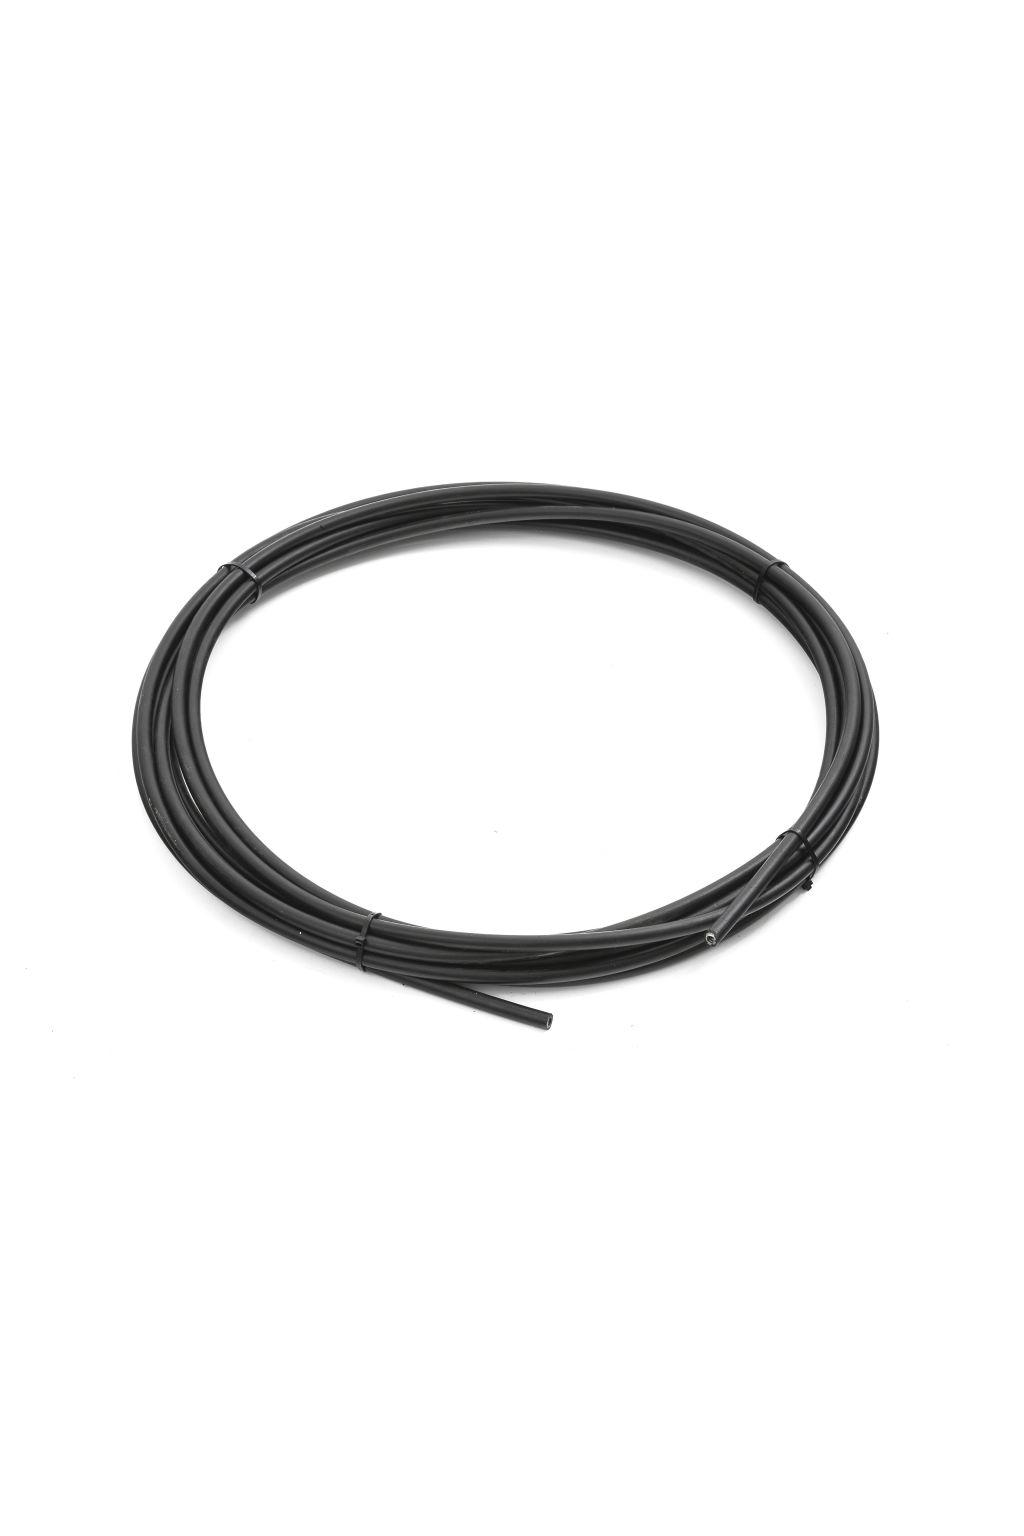 Wire conduit for wire drums Alternativ løsning for trådføring når avstanden mellom trådmateren og trådtønnen er